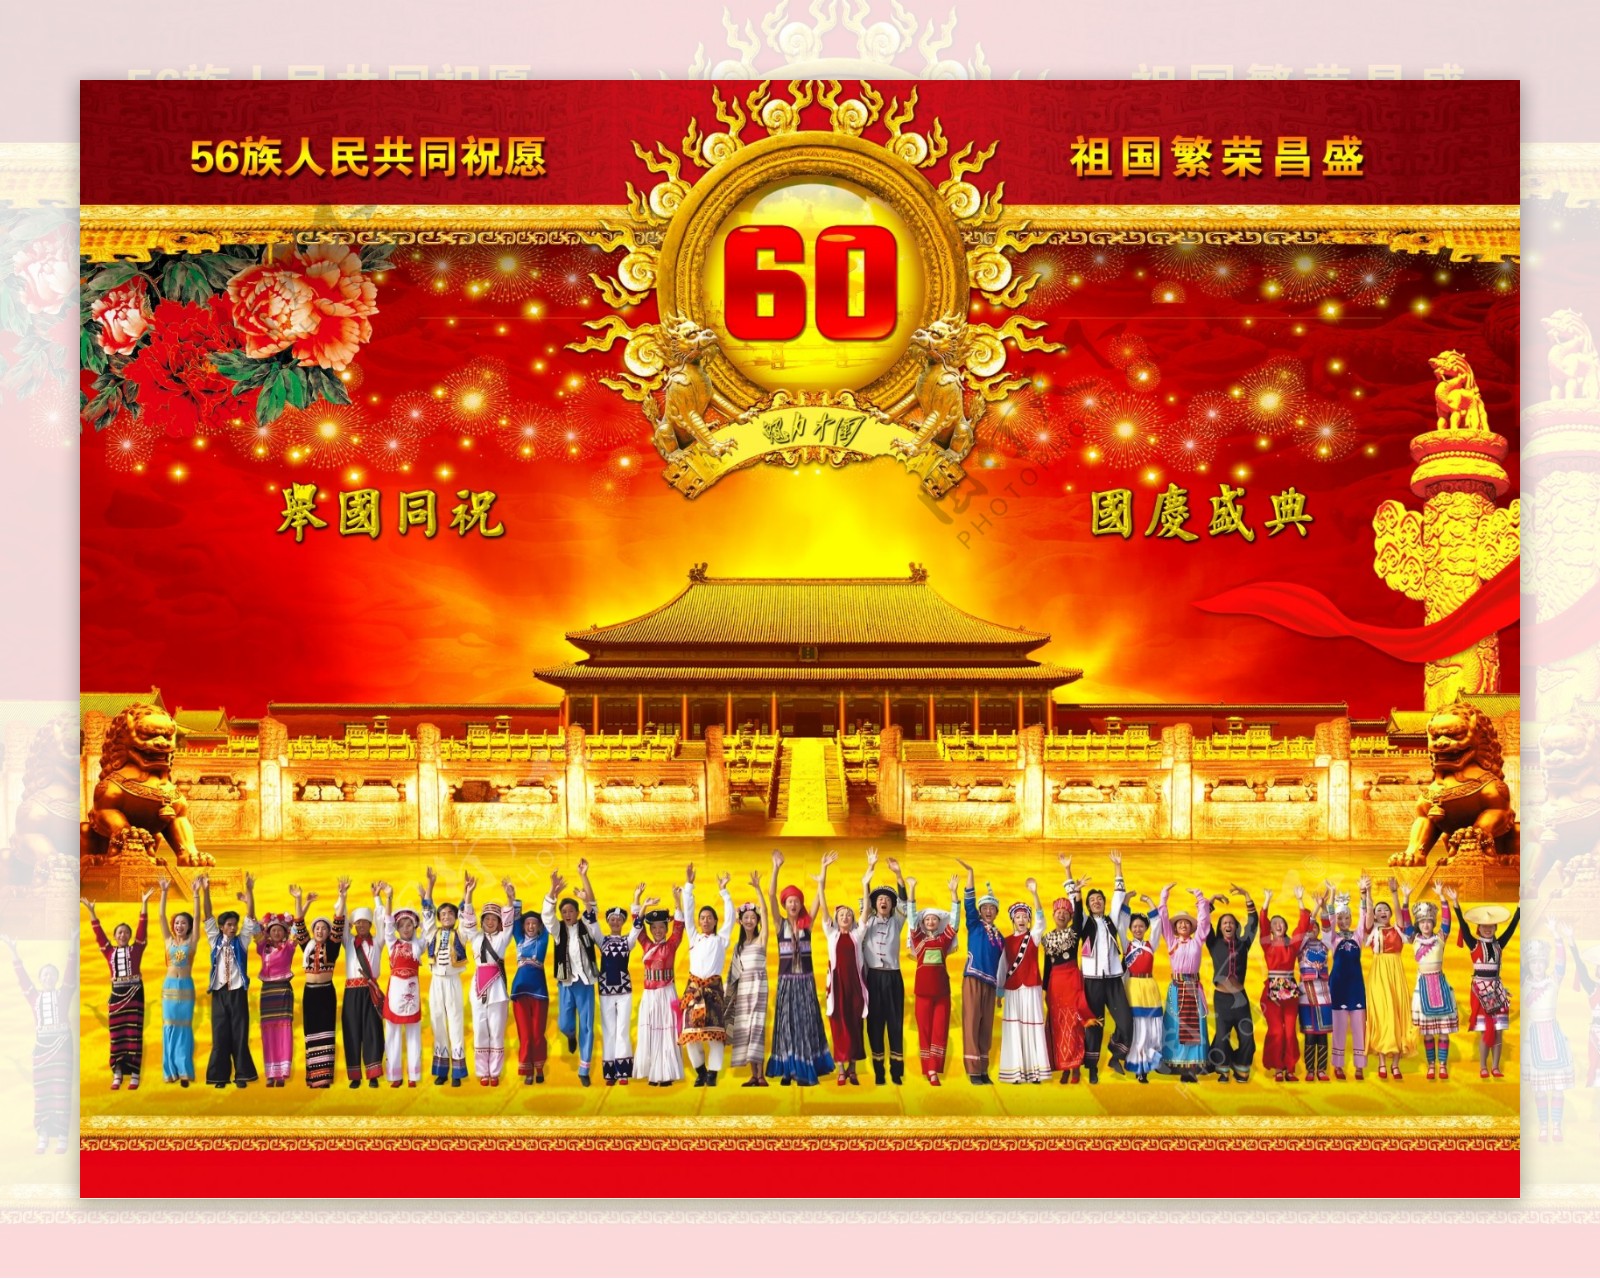 56族人民喜迎国庆60年psd广告模板下载